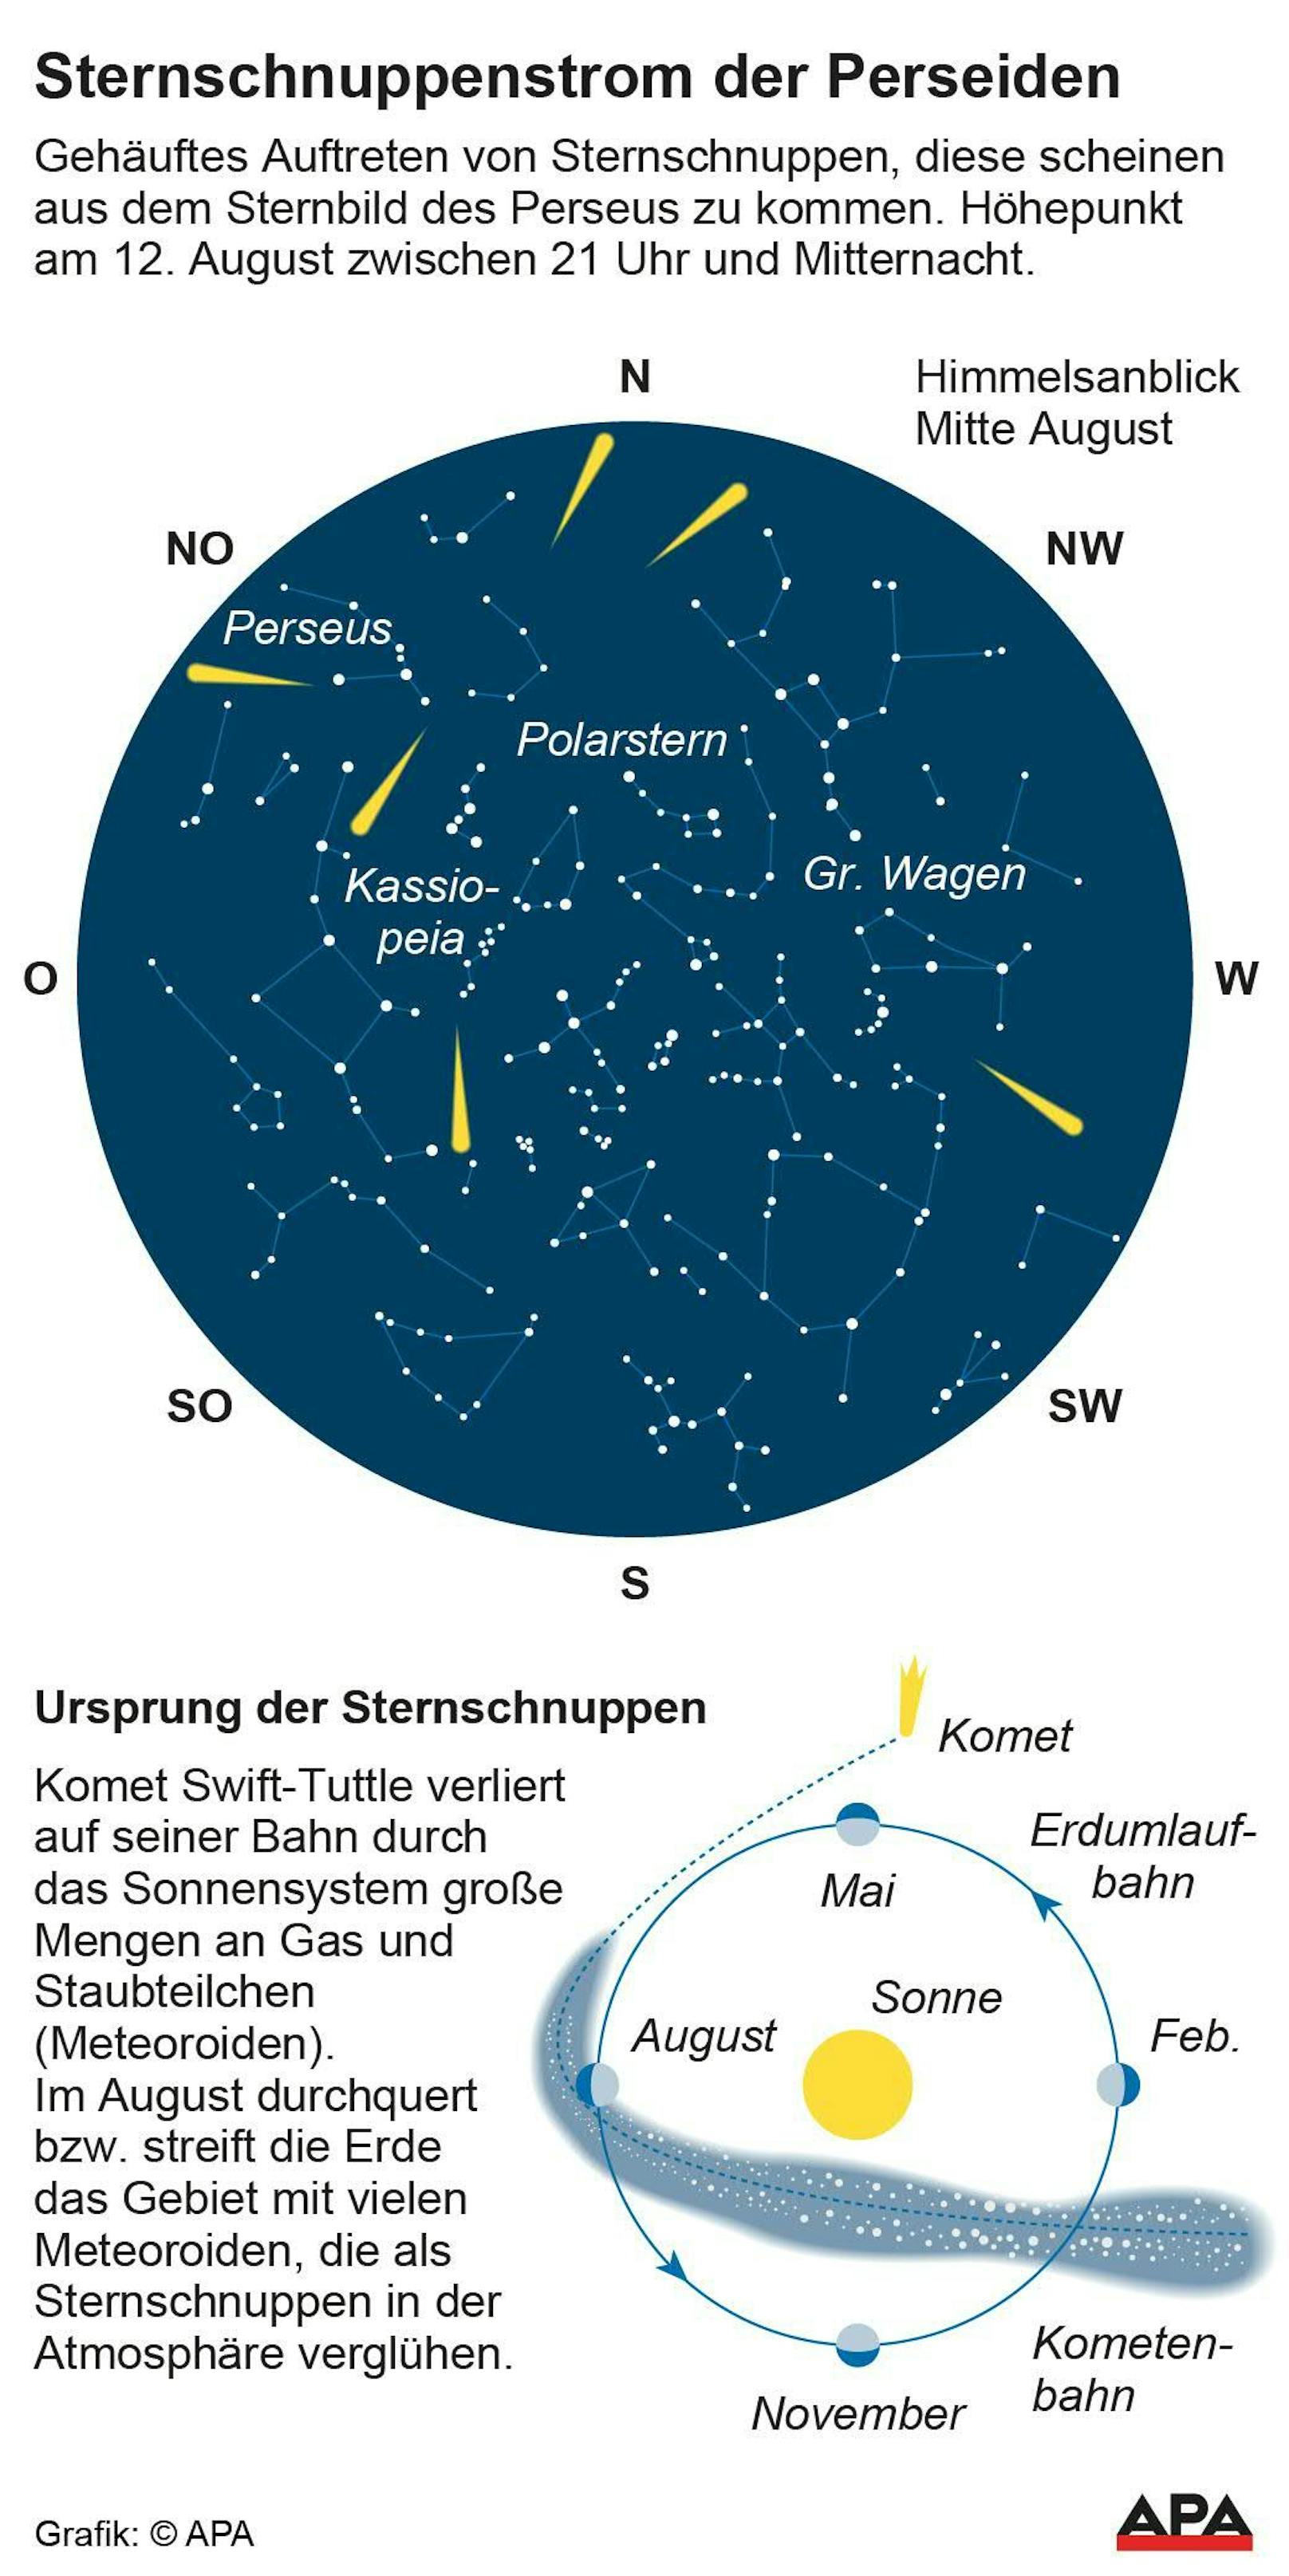 Der Komet 109P/Swift-Tuttle ist für die Entstehung der Perseiden verantwortlich.&nbsp;